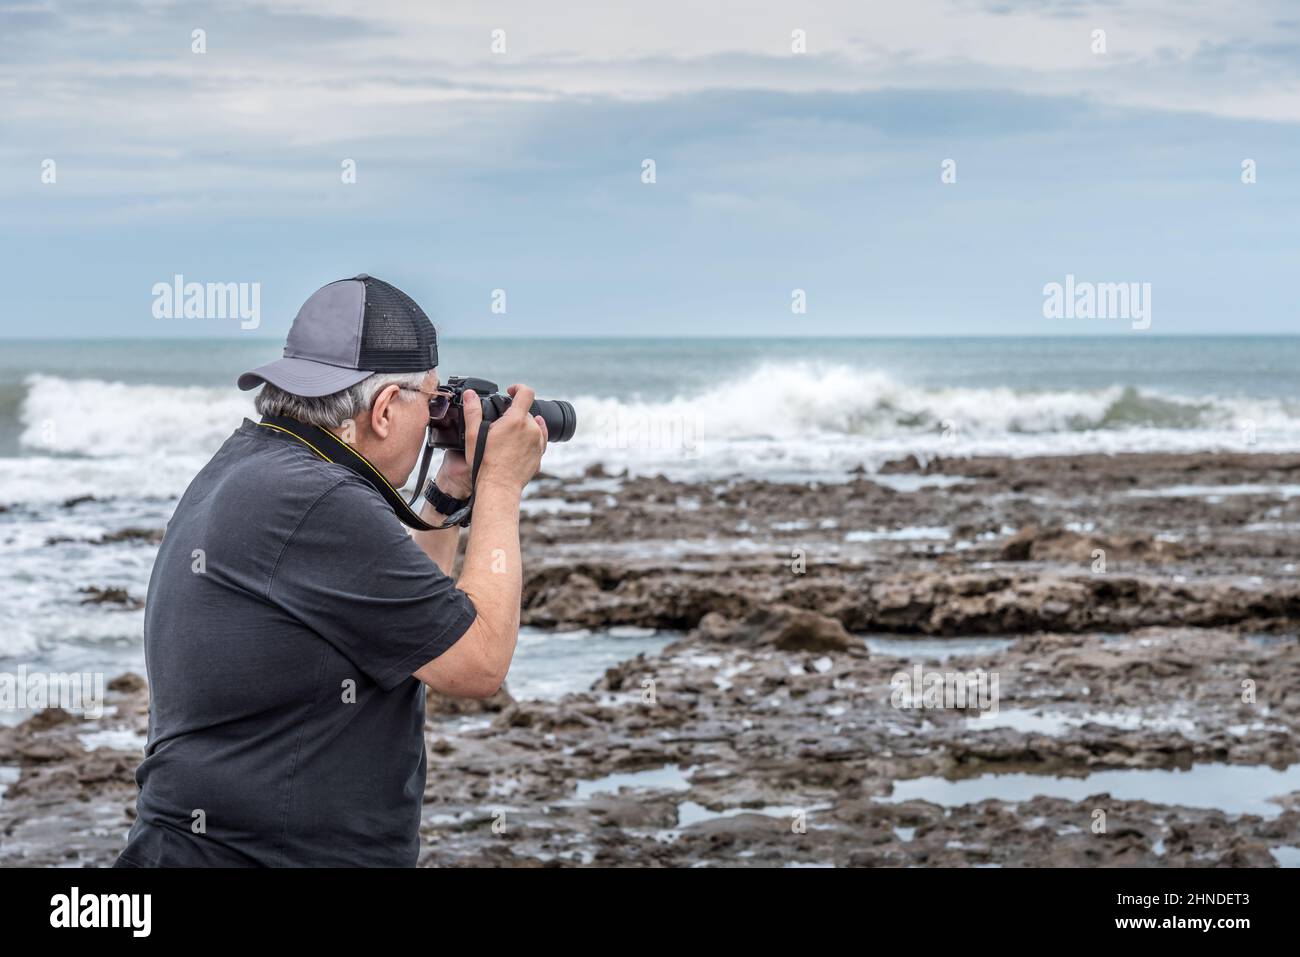 Halbkörper-Rückansicht eines erwachsenen Mannes mit Kappe, die ein Foto auf den Felsen in der Nähe des Meeres macht. Stockfoto